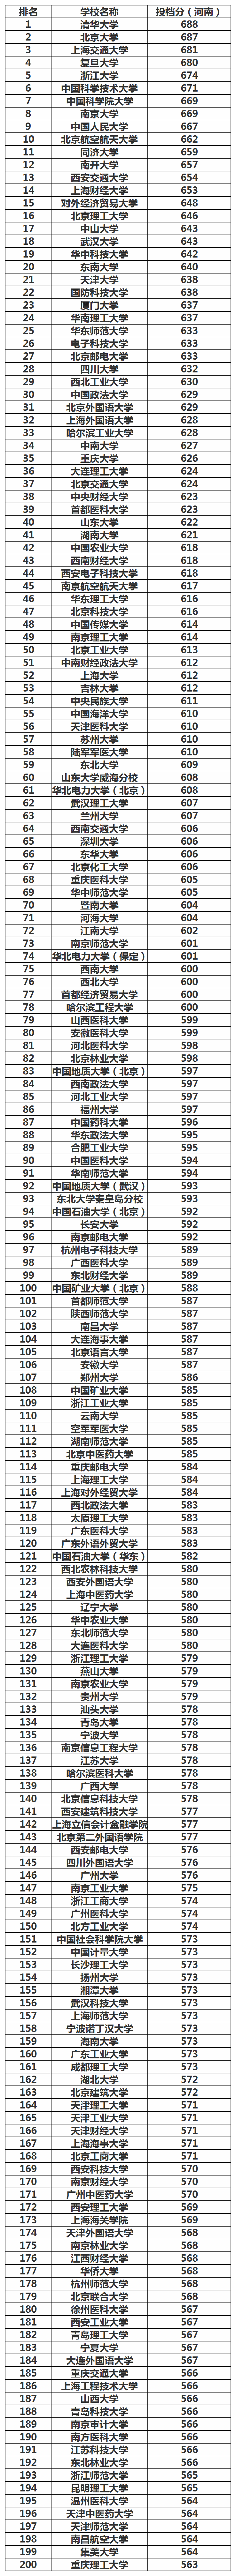 中国理科大学排行榜_最新!2022中国大学理科排名出炉